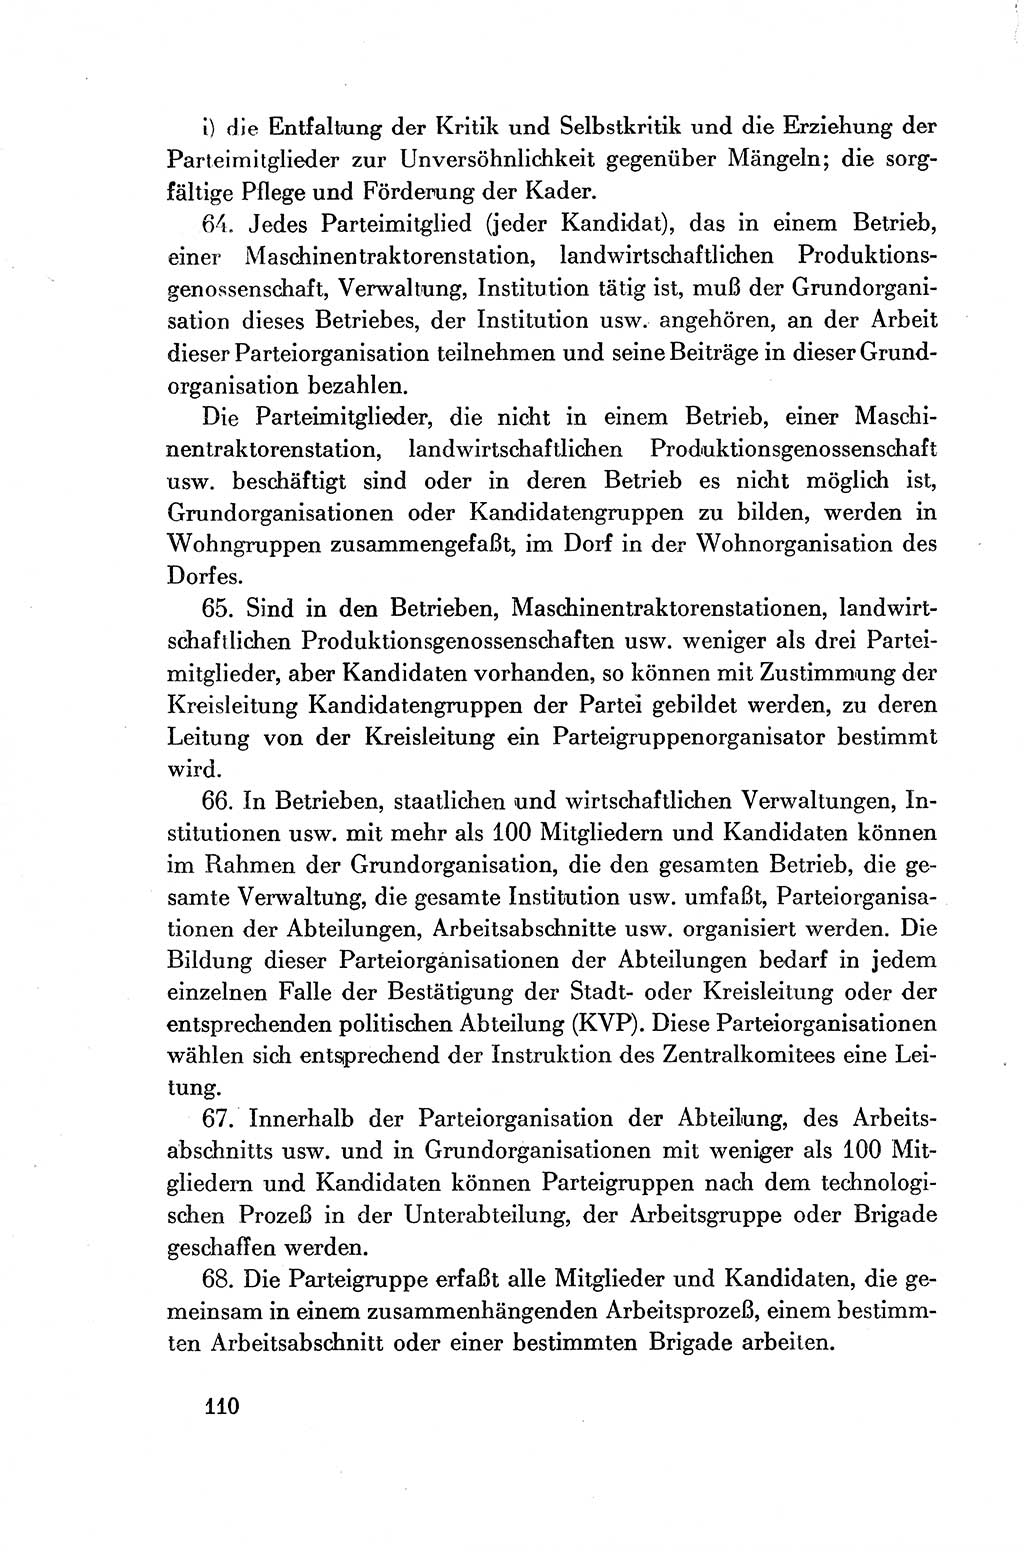 Dokumente der Sozialistischen Einheitspartei Deutschlands (SED) [Deutsche Demokratische Republik (DDR)] 1954-1955, Seite 110 (Dok. SED DDR 1954-1955, S. 110)